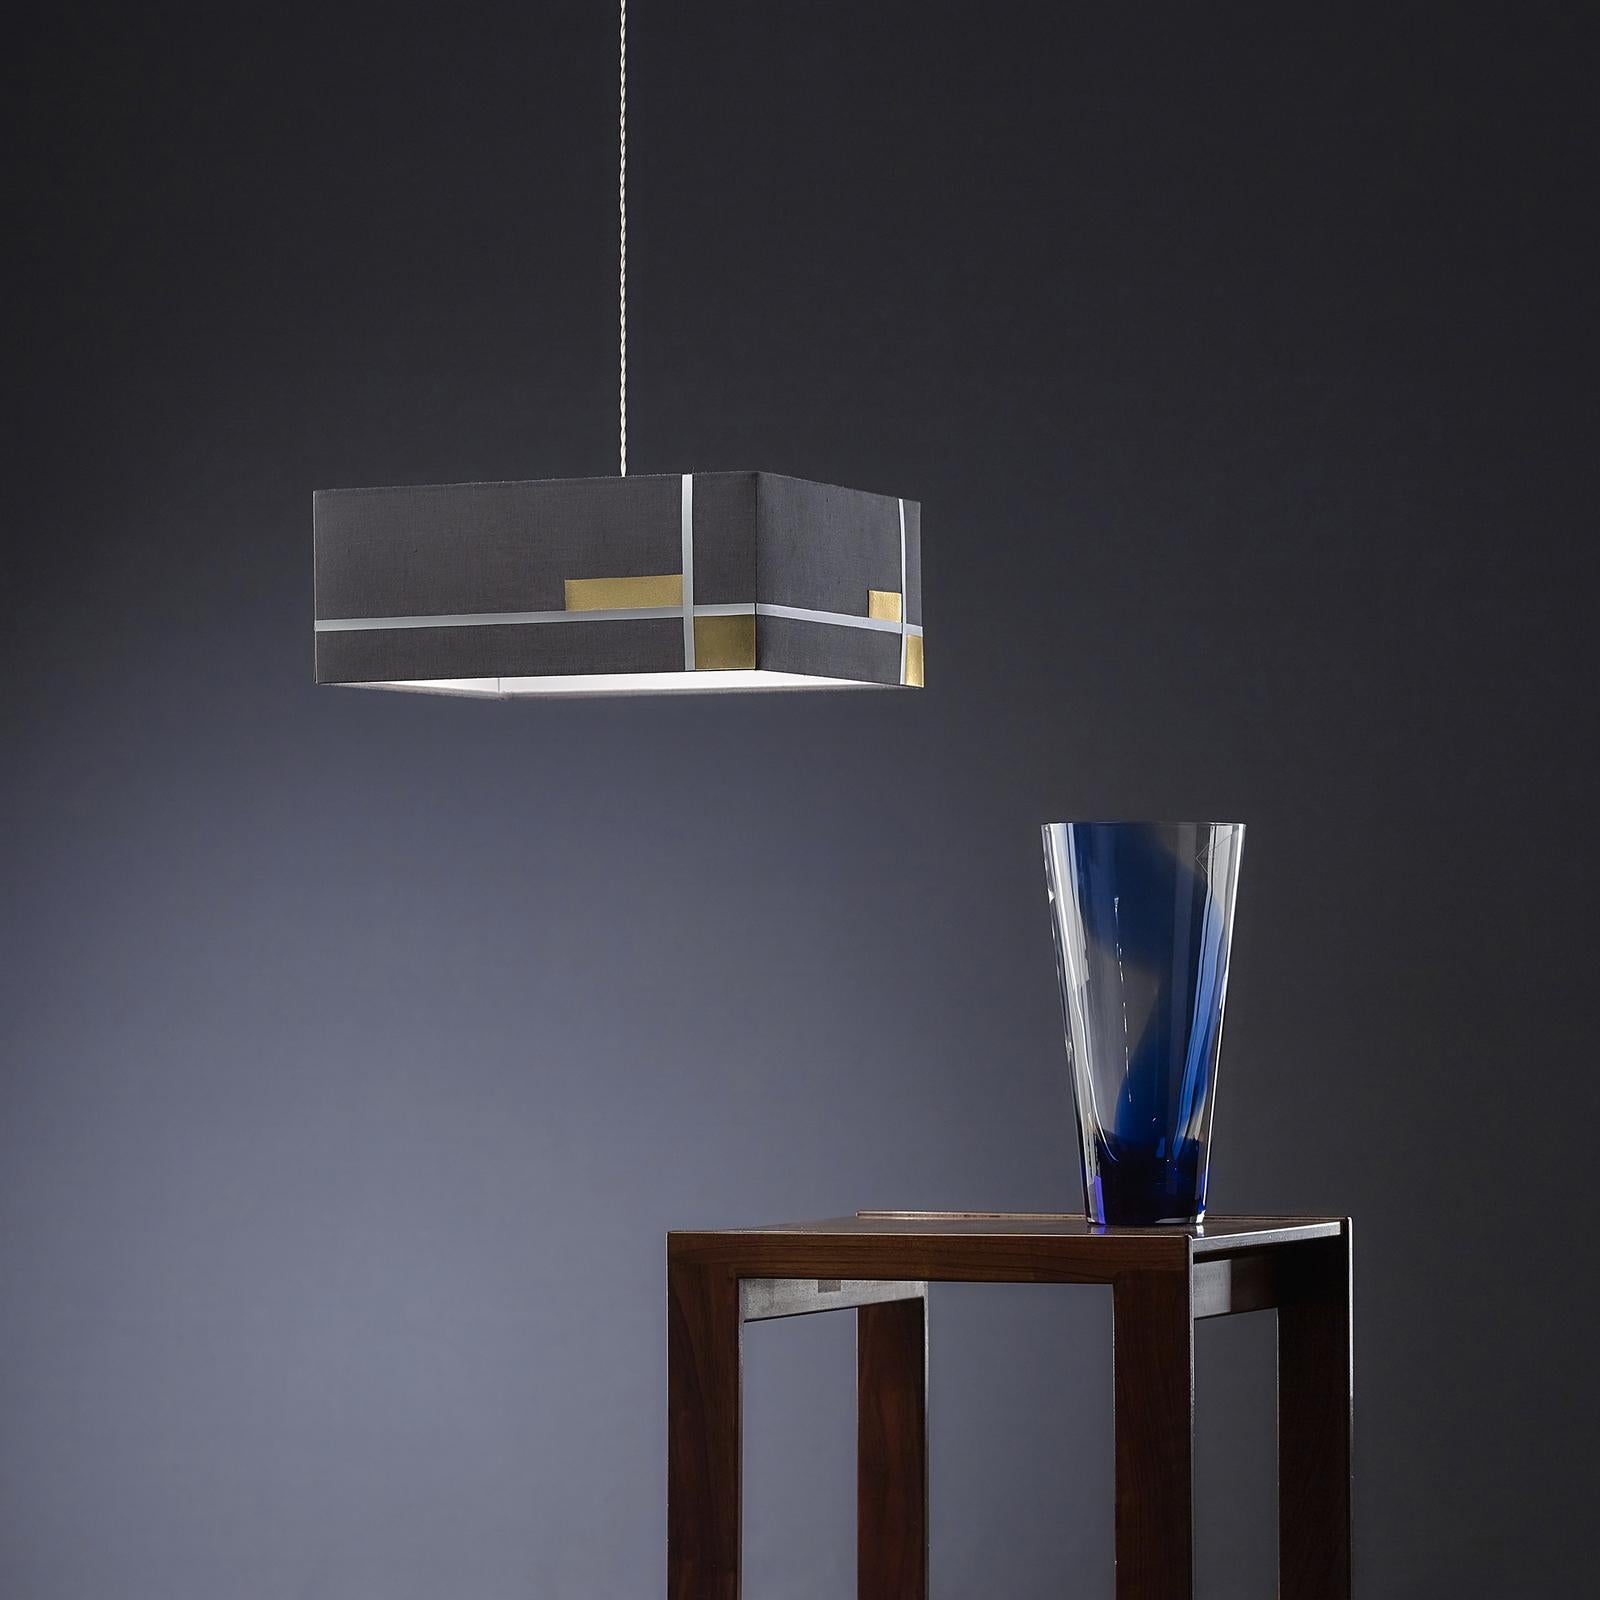 Italian Cemento Pendant Lamp by Luci di Seta